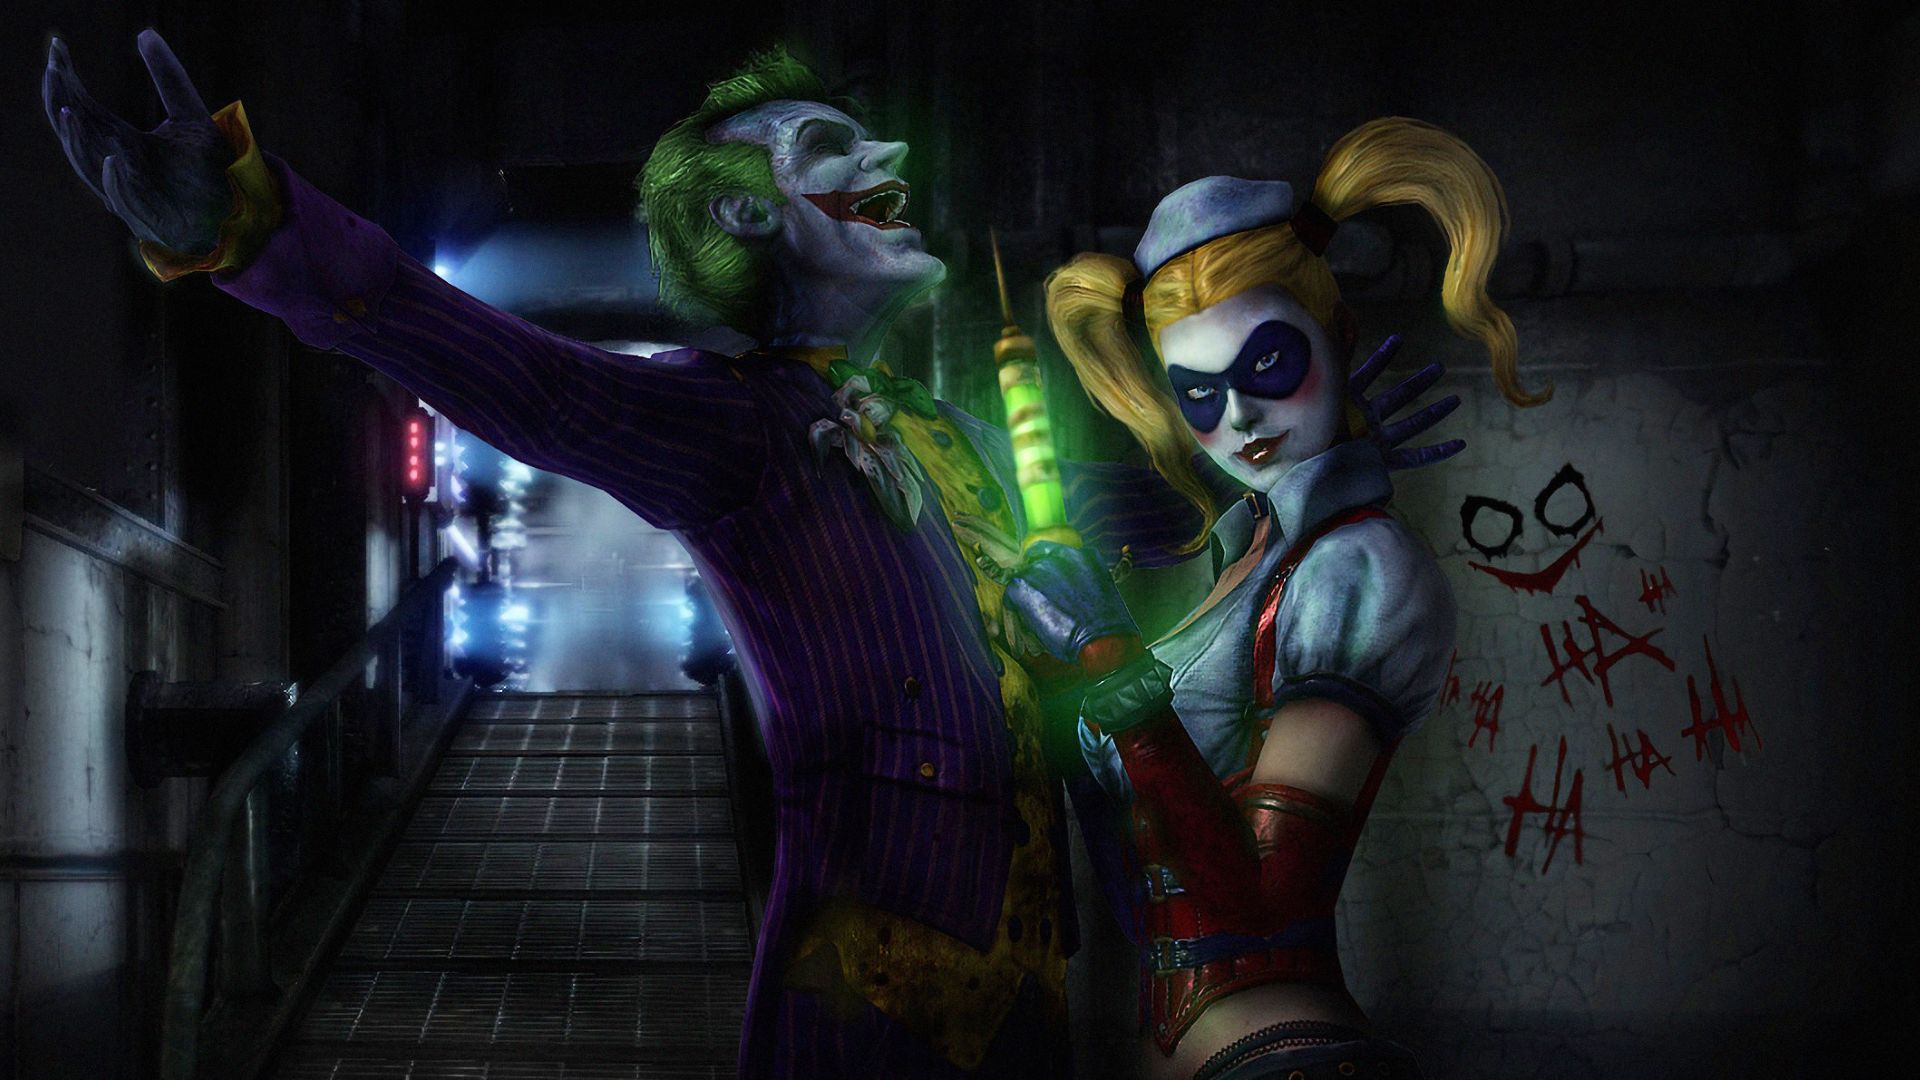 Joker and Harley Quinn 4k Wallpaper For Desktop